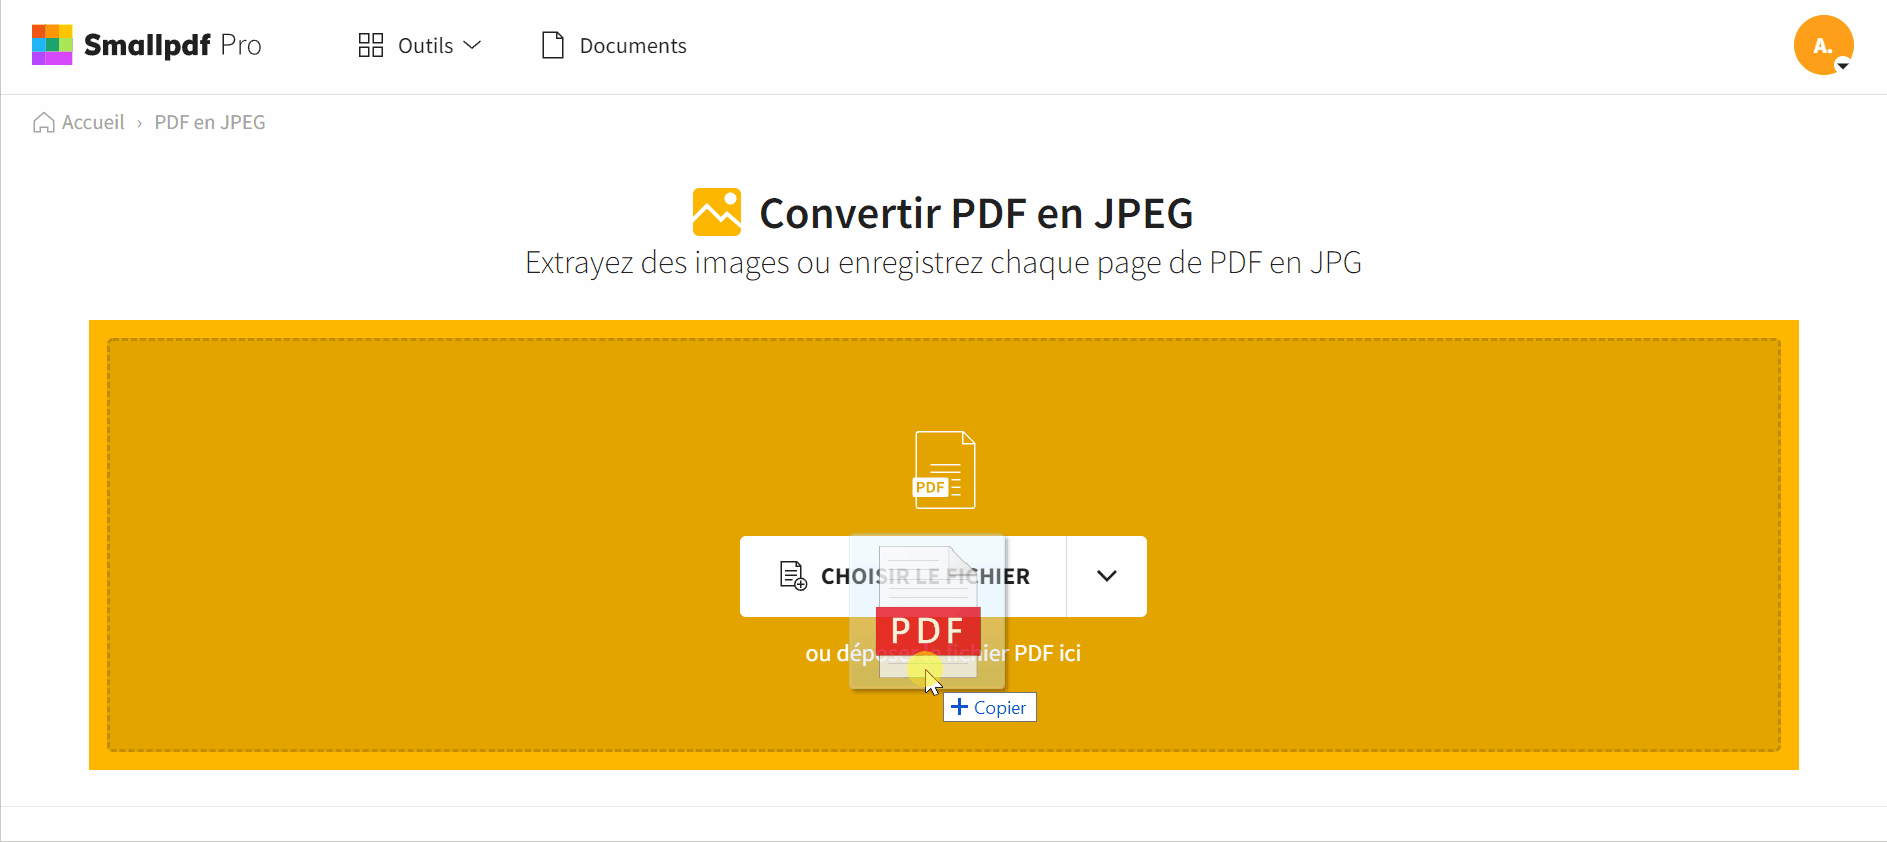 2021-12-21 - Convertir un PDF en JPG sur Windows 10 gratuitement - outil PDF en JPG